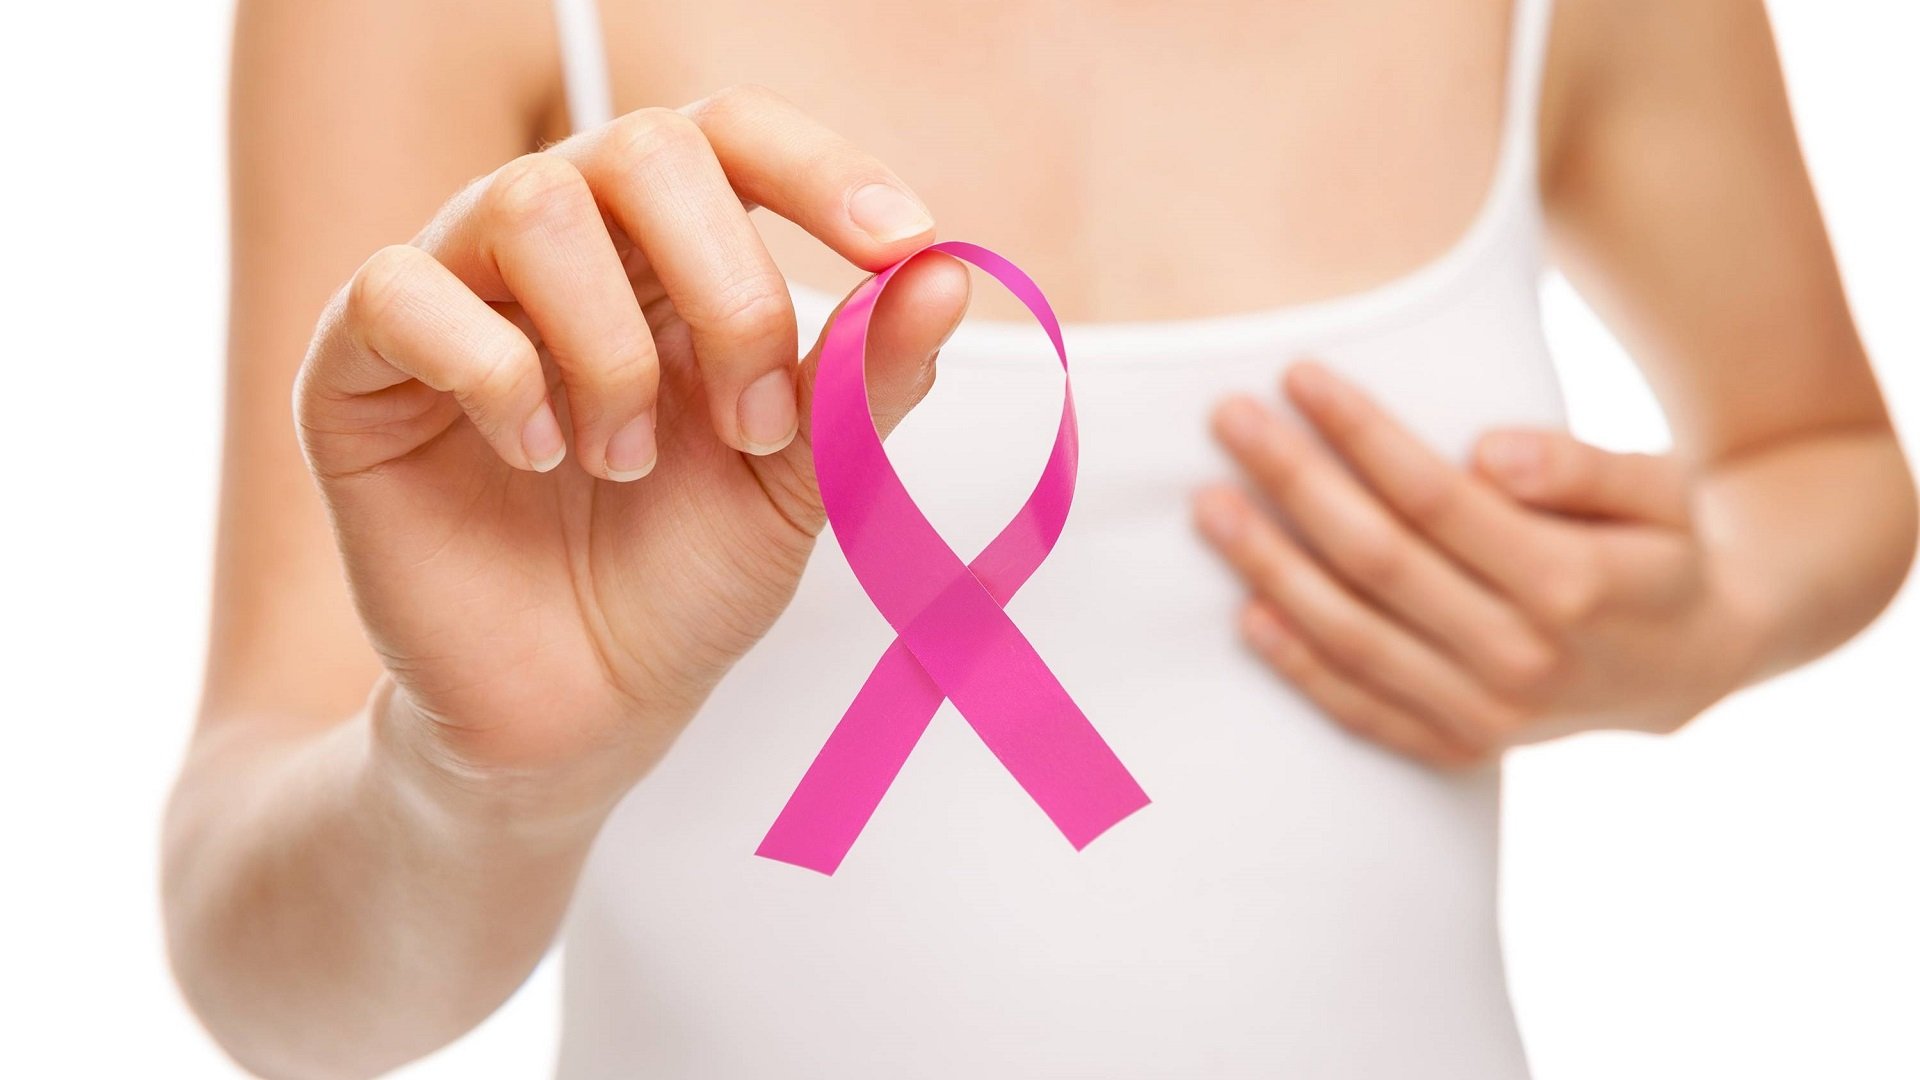   Hệ thống Google có thể giúp phát hiện bệnh ung thư vú ở nữ (Ảnh minh họa)  